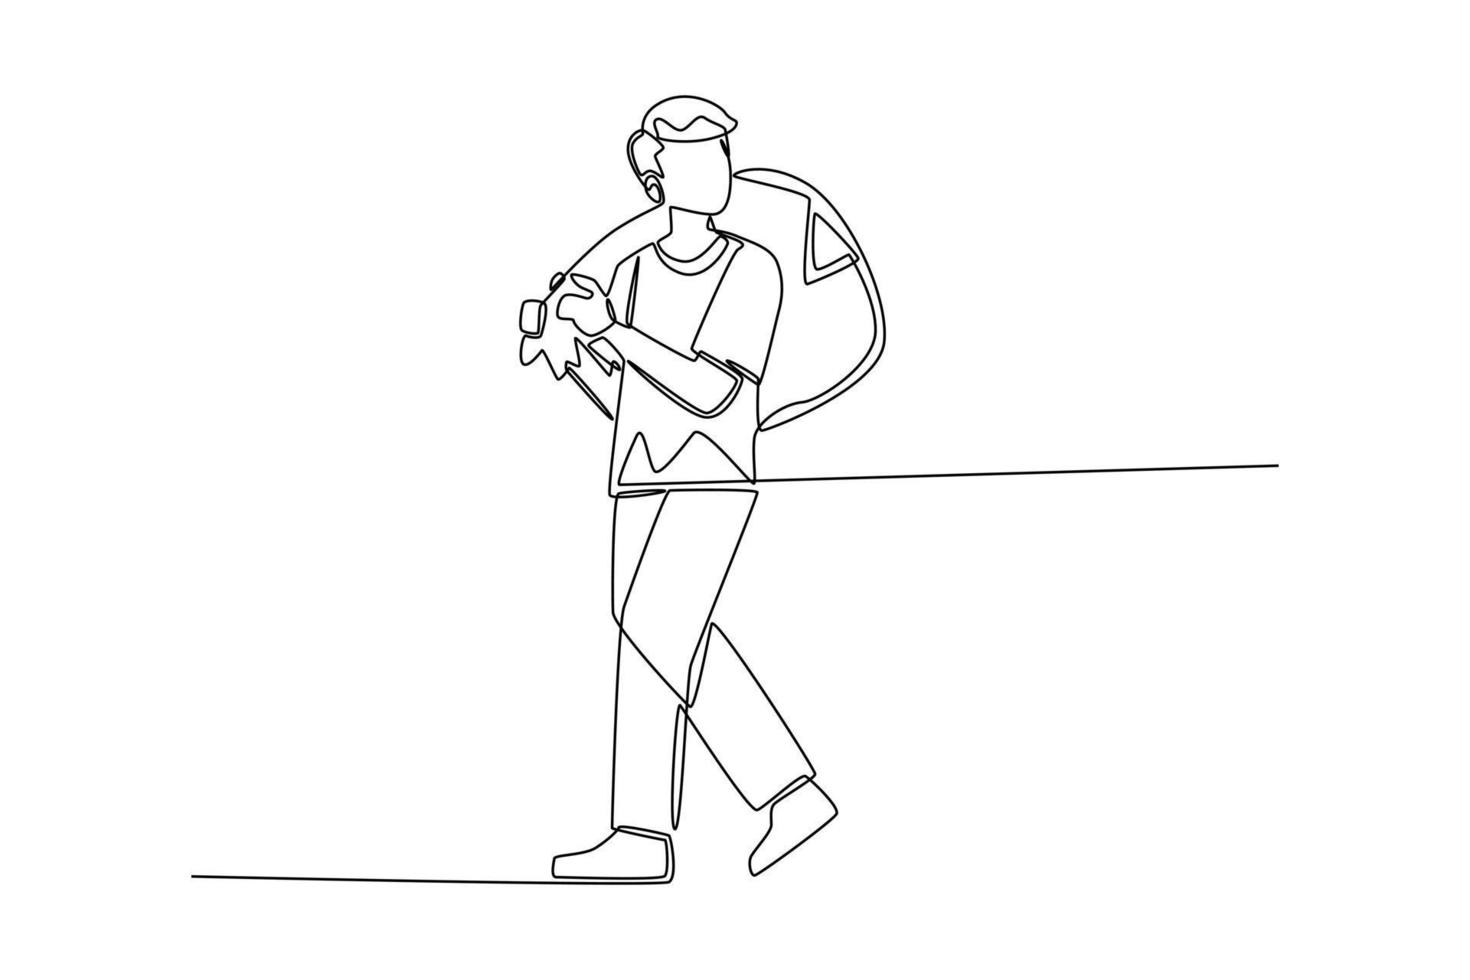 disegno continuo di una linea giovane uomo che porta il sacco della spazzatura sulla spalla. concetto di ecologia e riciclaggio. illustrazione grafica vettoriale di disegno a linea singola.